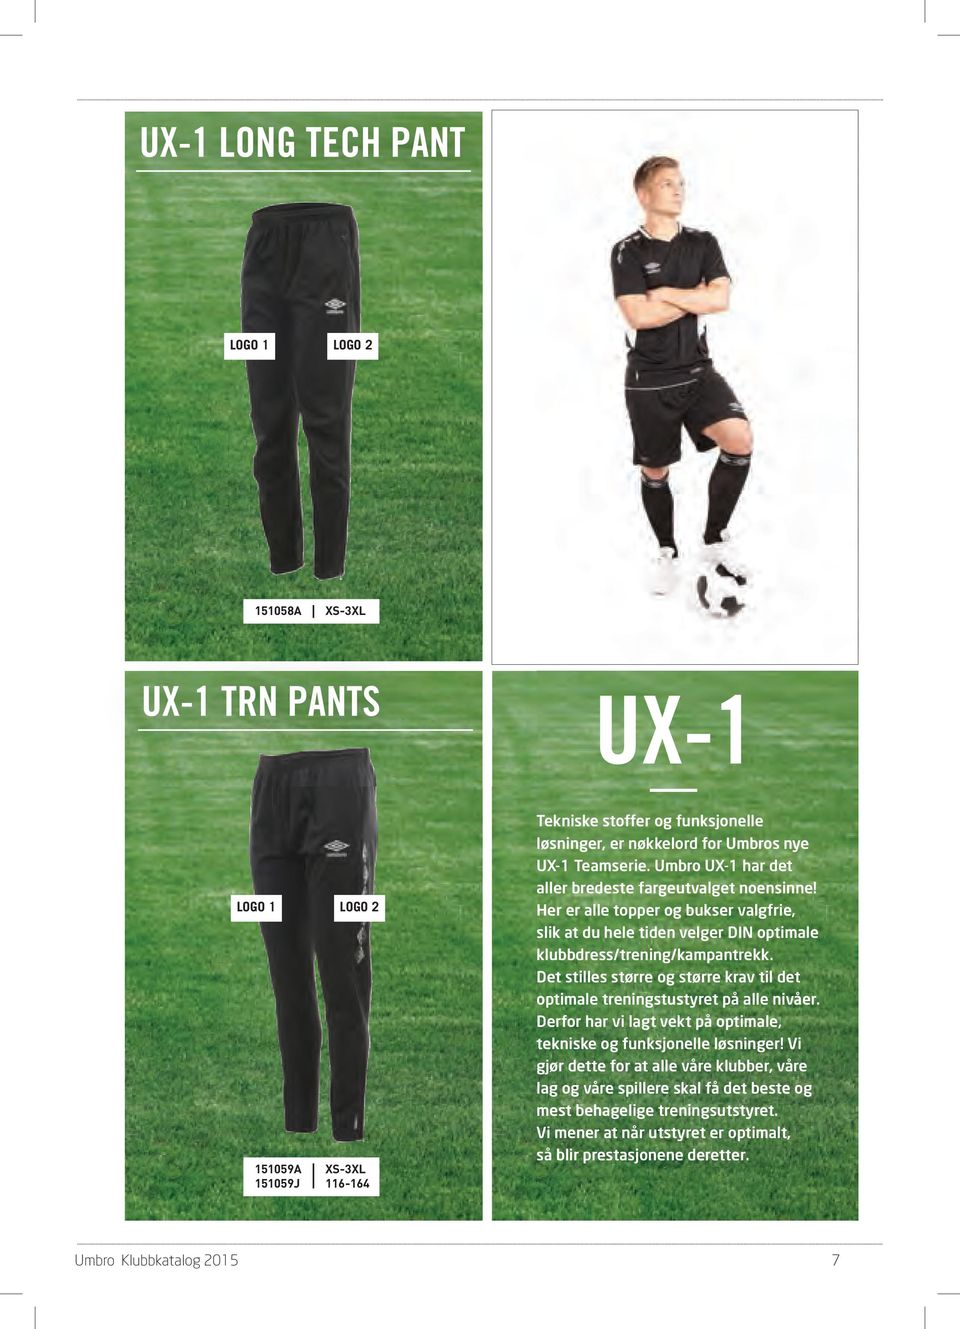 Her er alle topper og bukser valgfrie, slik at du hele tiden velger DIN optimale klubbdress/trening/kampantrekk.